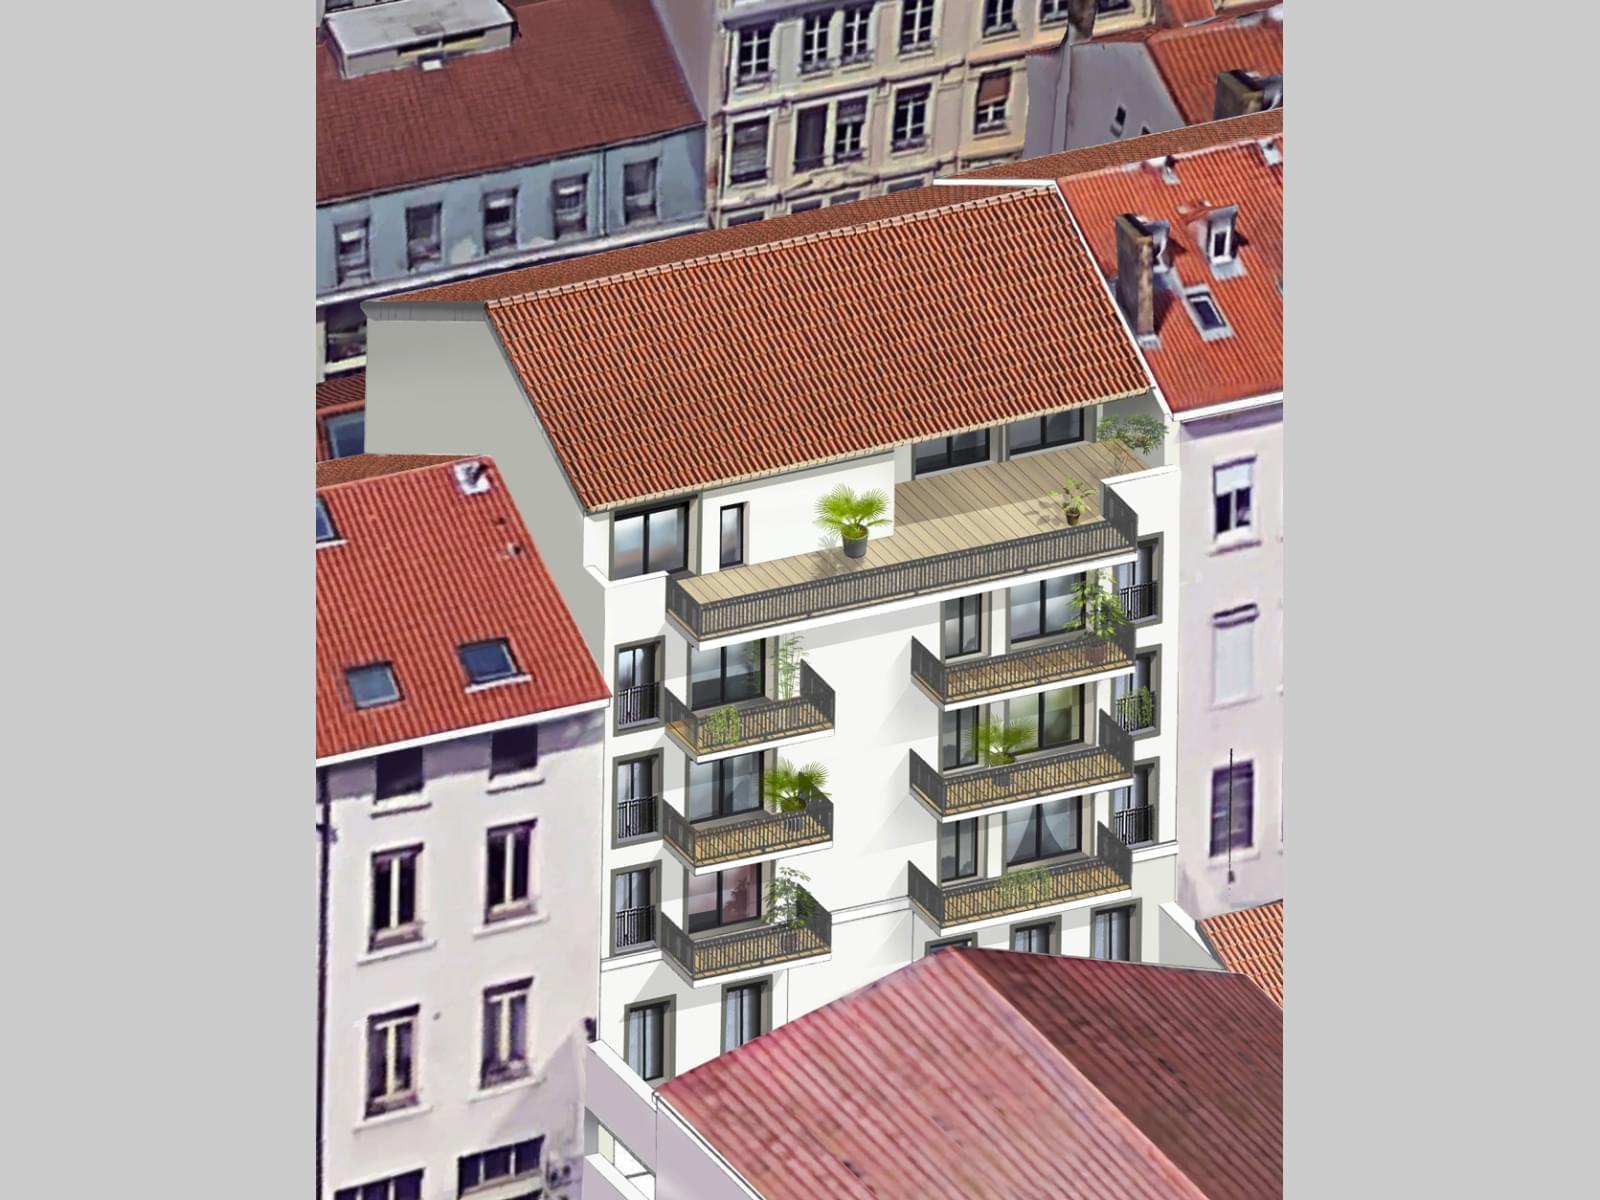 Résidence à Lyon 6 Proche Parc Tête d'Or, Immobilier neuf toutes garanties, Emplacement exceptionnel,